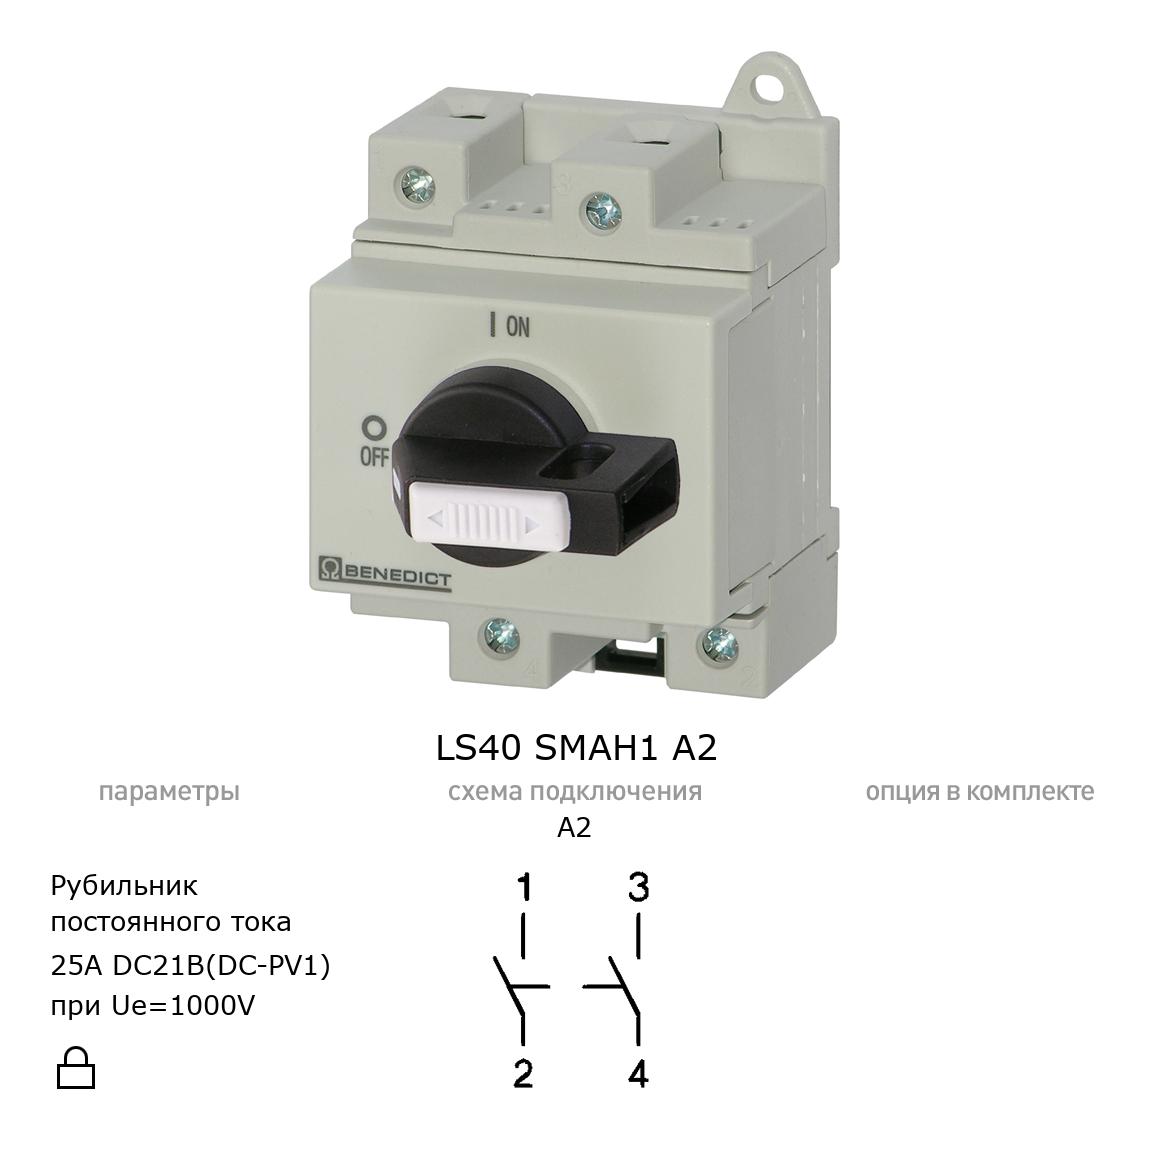 Выключатель нагрузки / рубильник для постоянного тока (DC) LS40 SMAH1 A2 BENEDICT